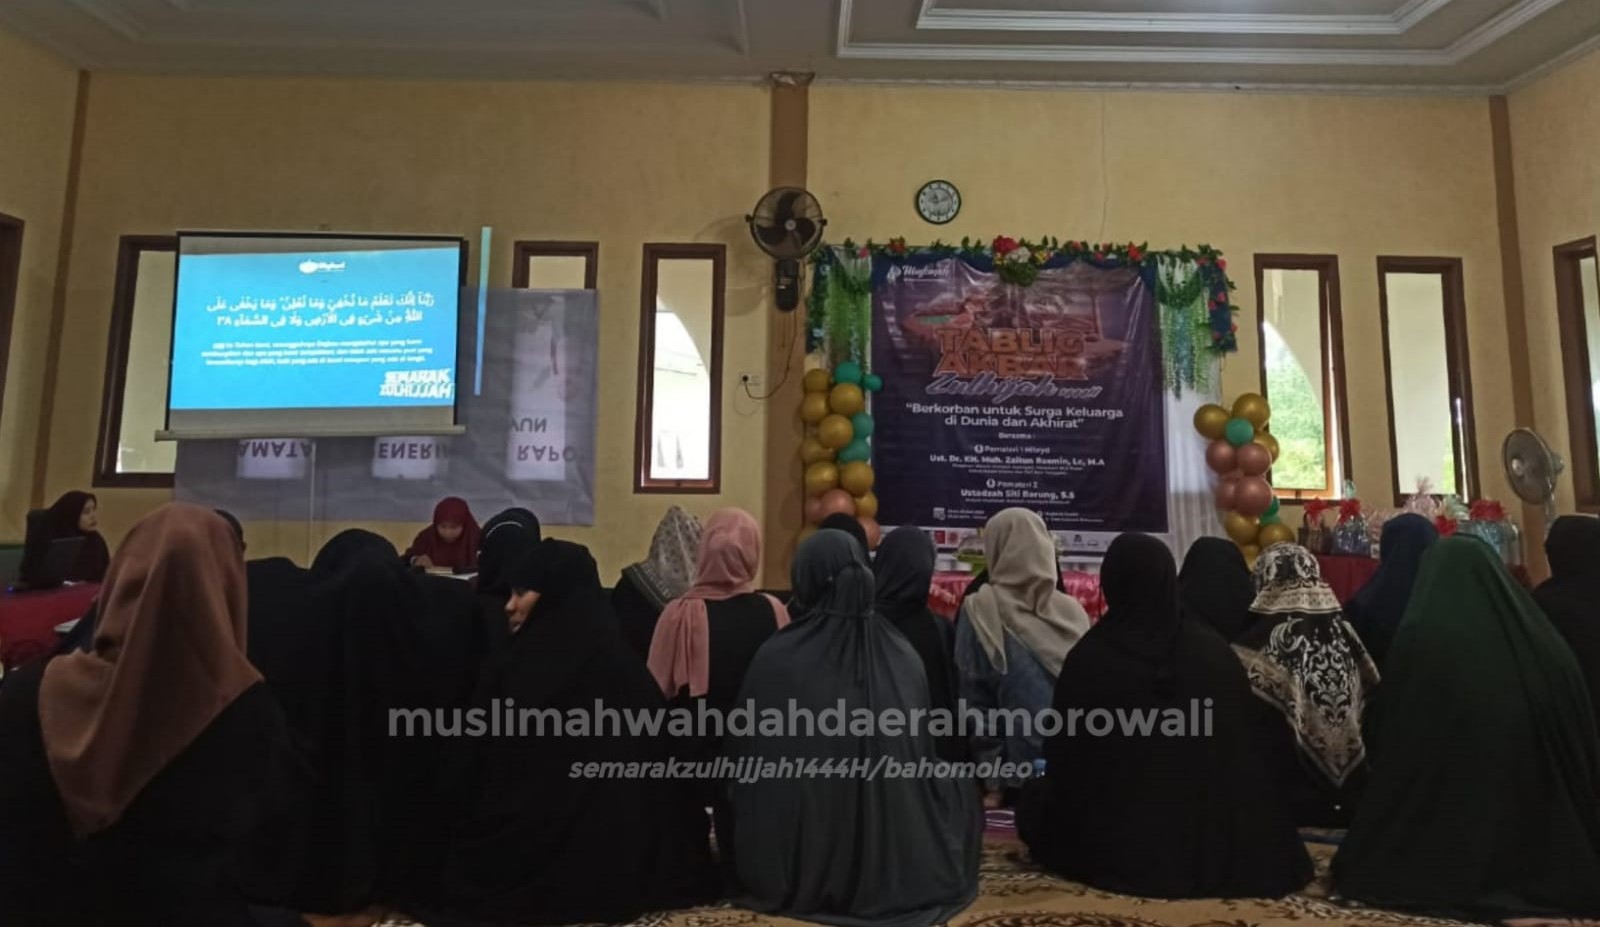 Semarak Zulhijah Muslimah Wahdah Daerah Morowali Usung Tema Berkorban untuk Surga Keluarga di Dunia dan Akhirat